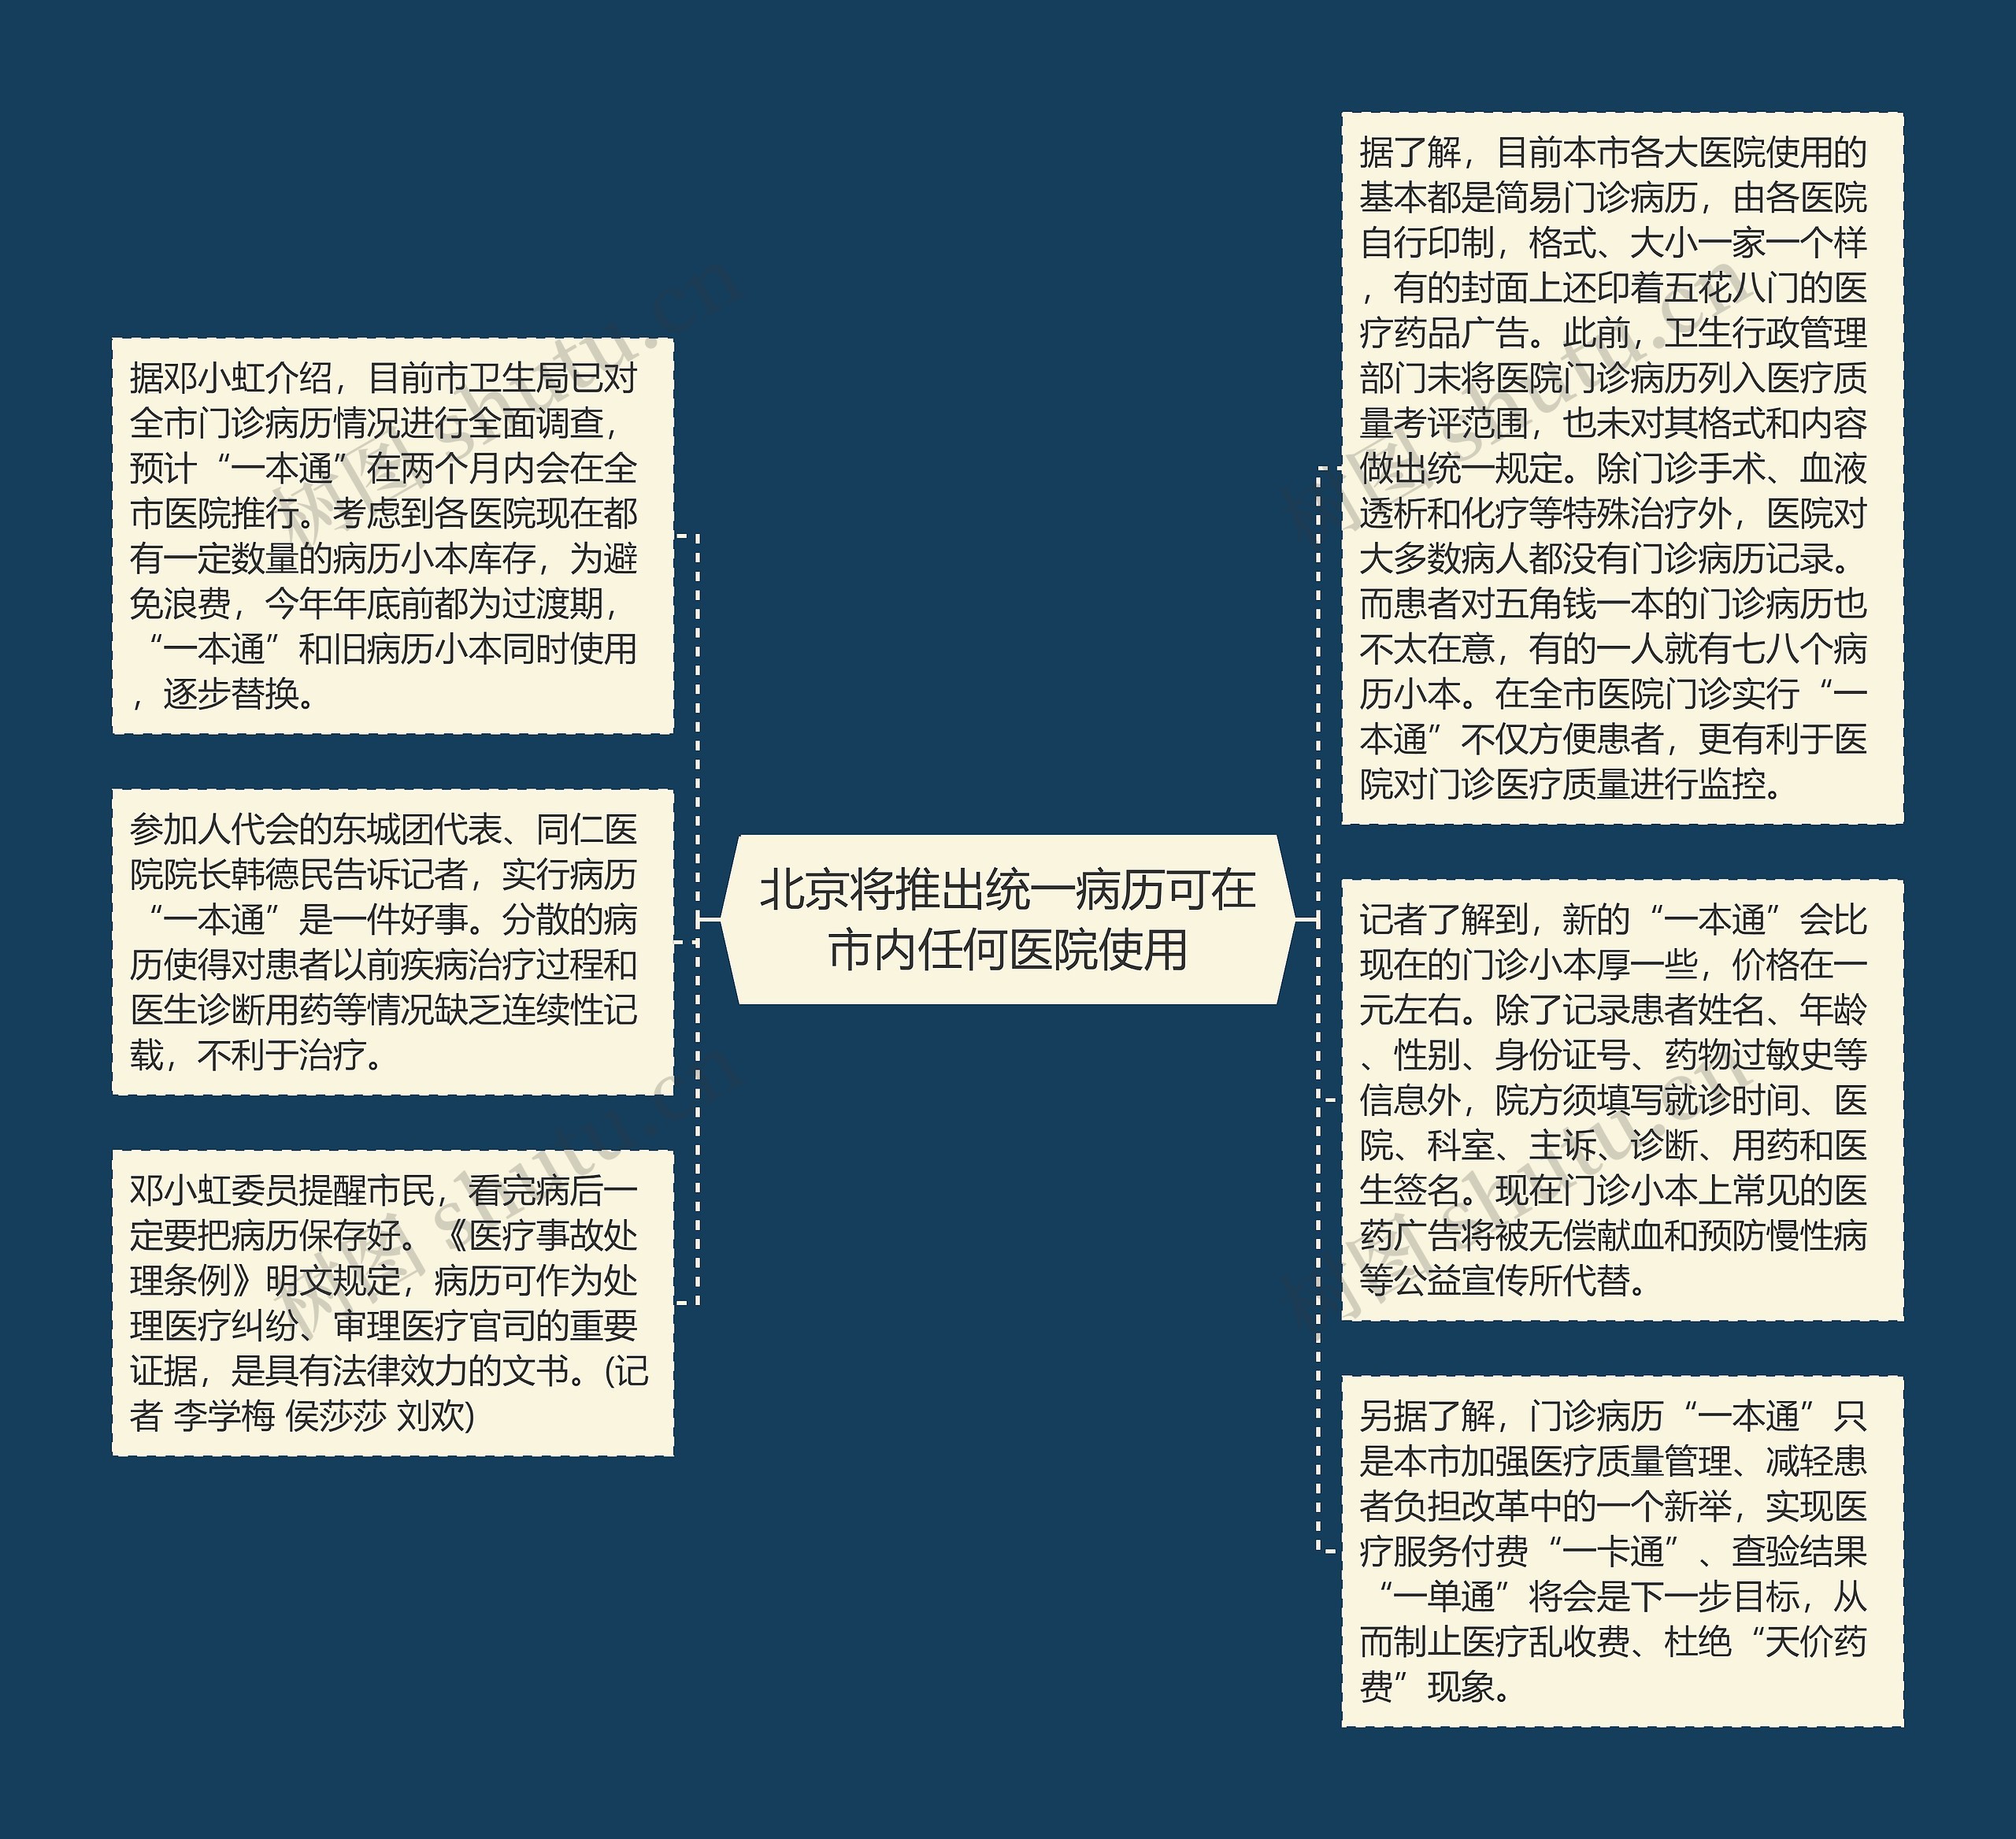 北京将推出统一病历可在市内任何医院使用思维导图